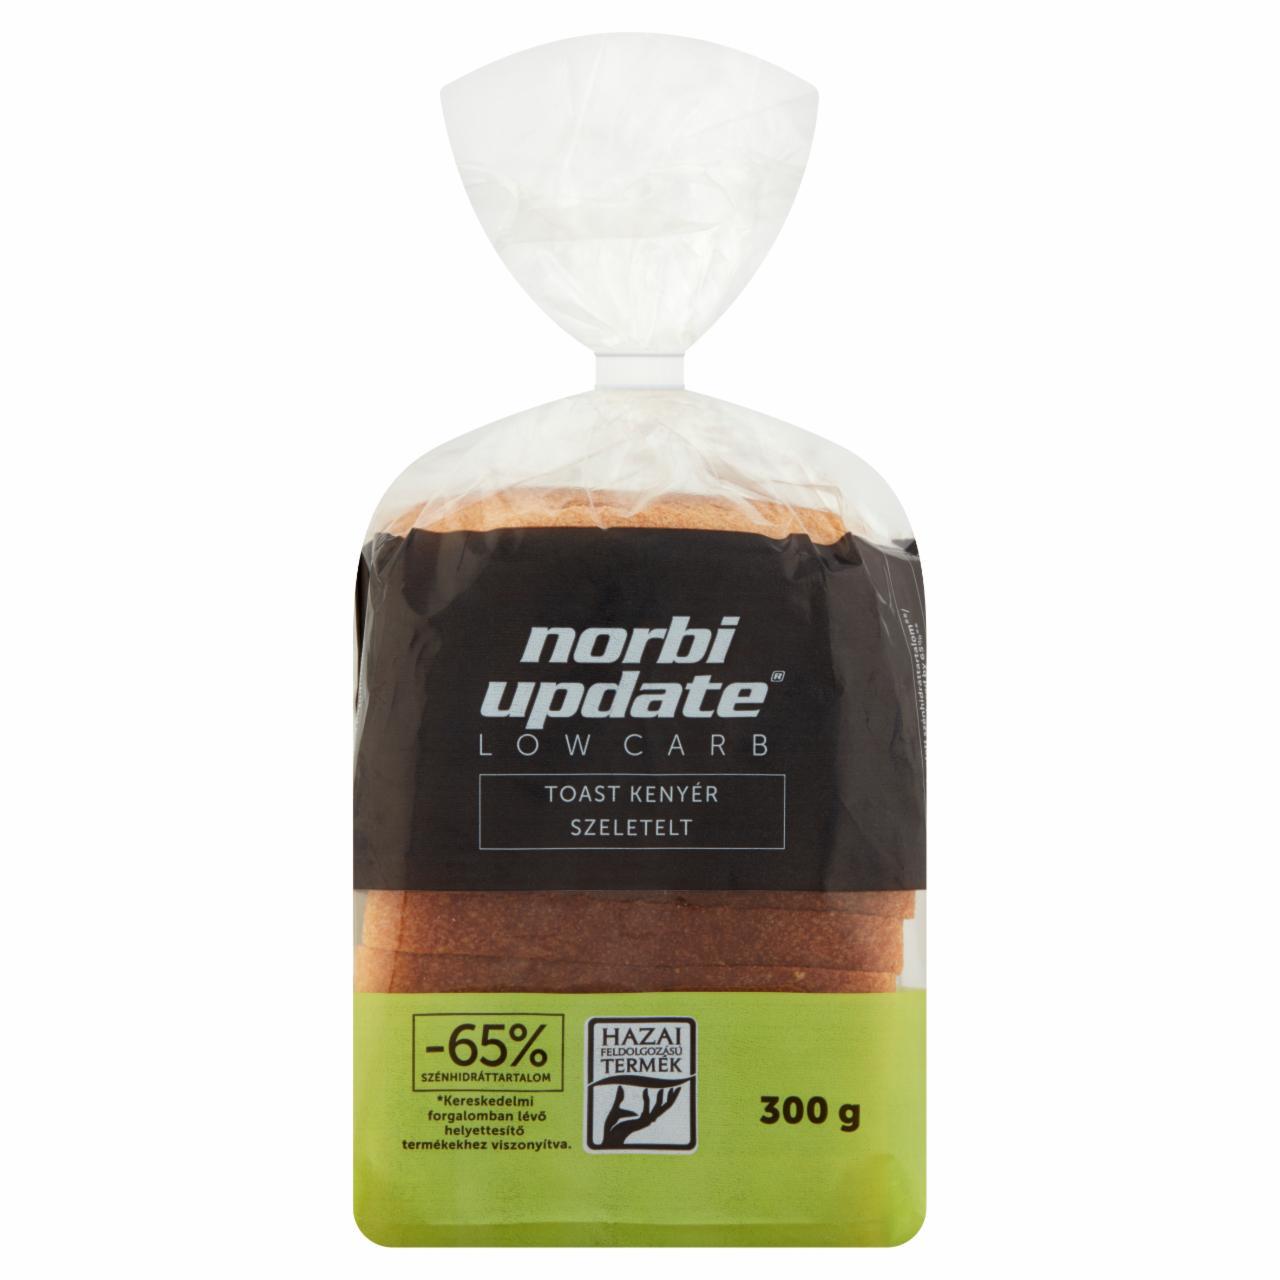 Képek - Low Carb szeletelt toast kenyér Norbi Update